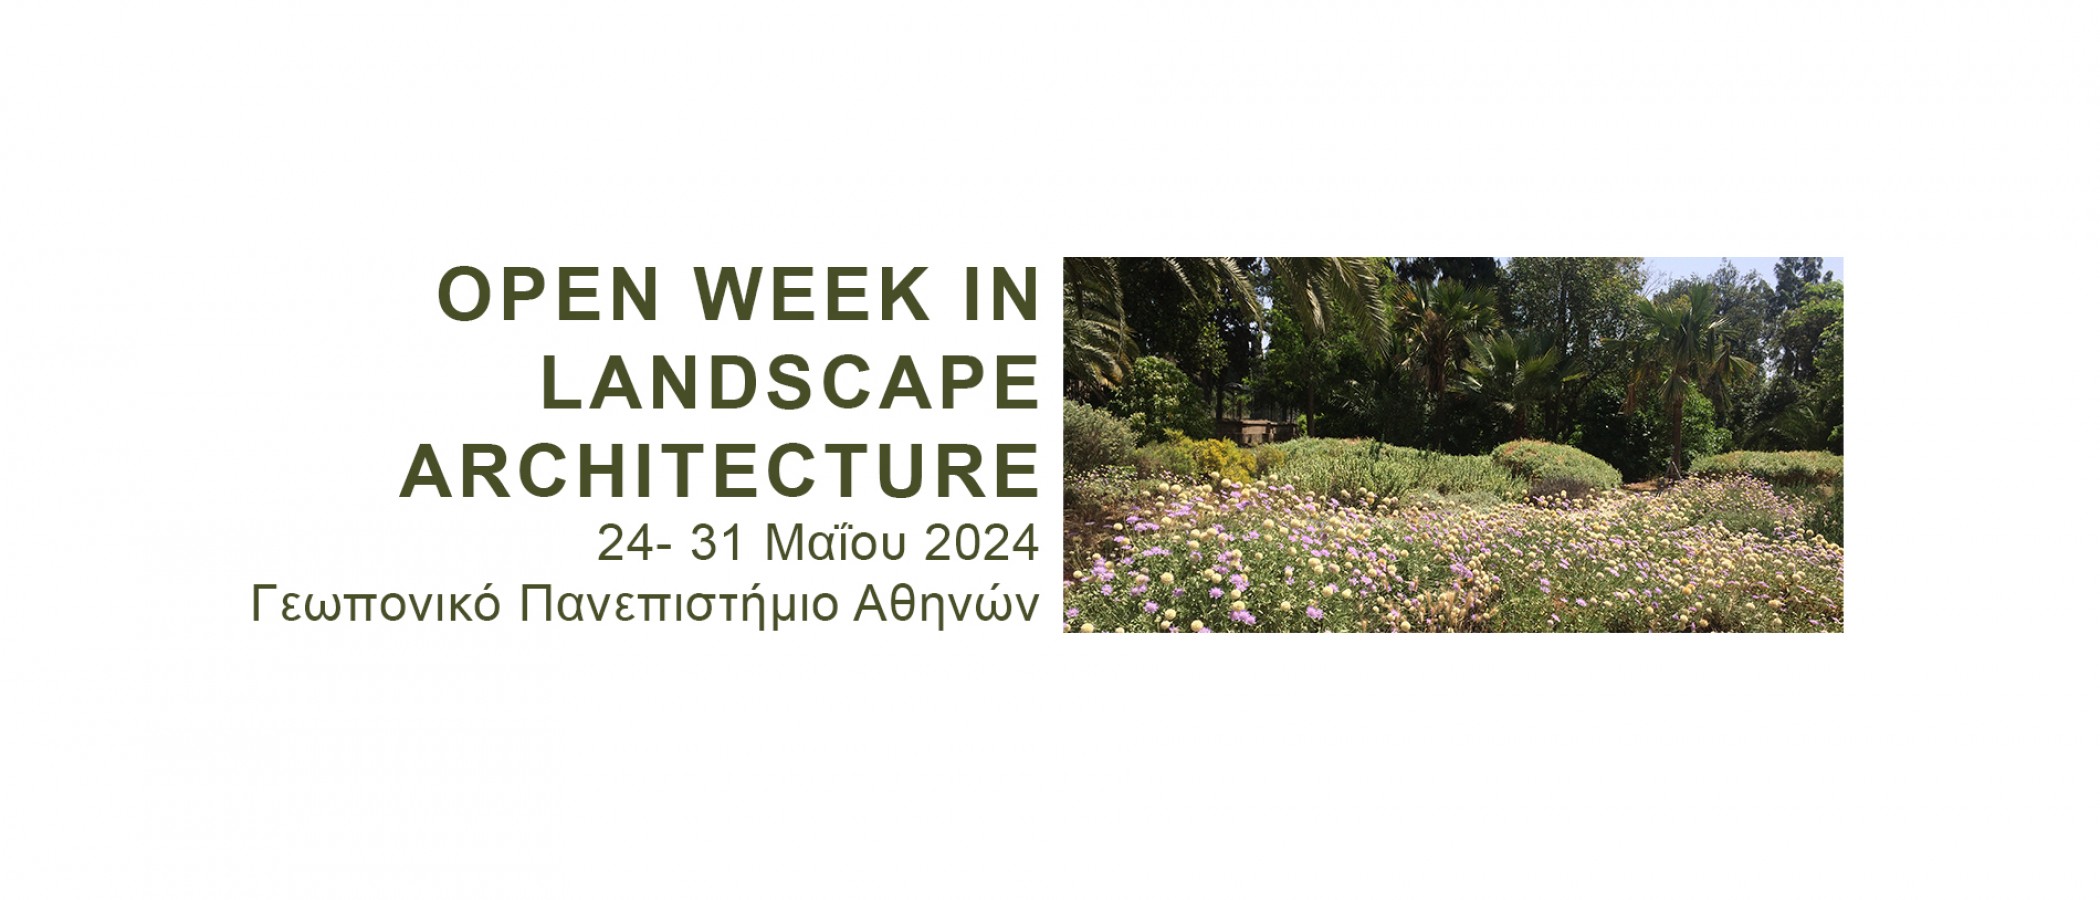 Open week in landscape architecture